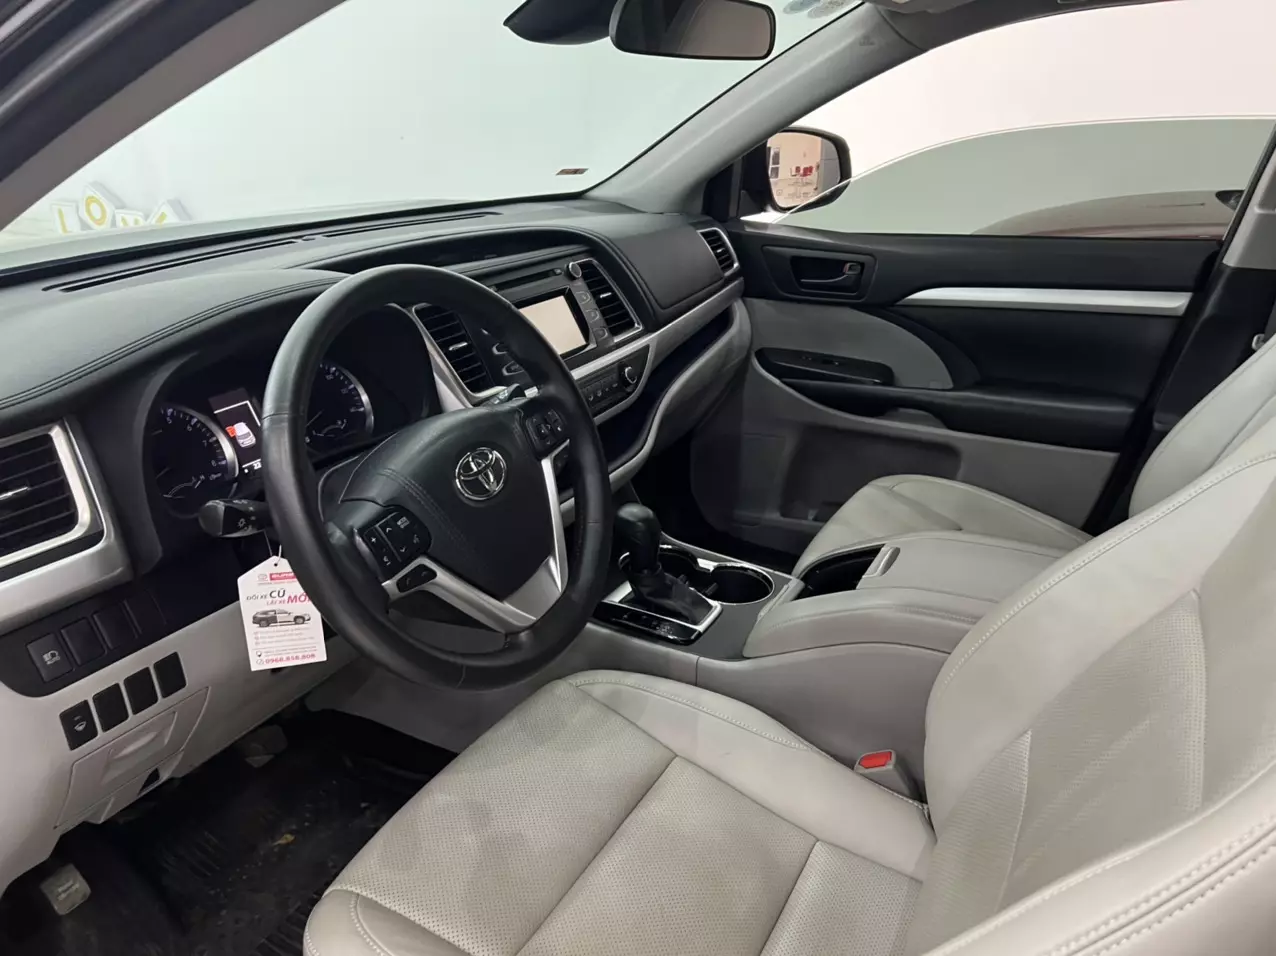 Cần bán xe Toyota Highlander LE sản xuất năm 2017 đăng ký 2019 tên cty có VAT. Xe đi hơn 2 vạn mile rất mới.-5